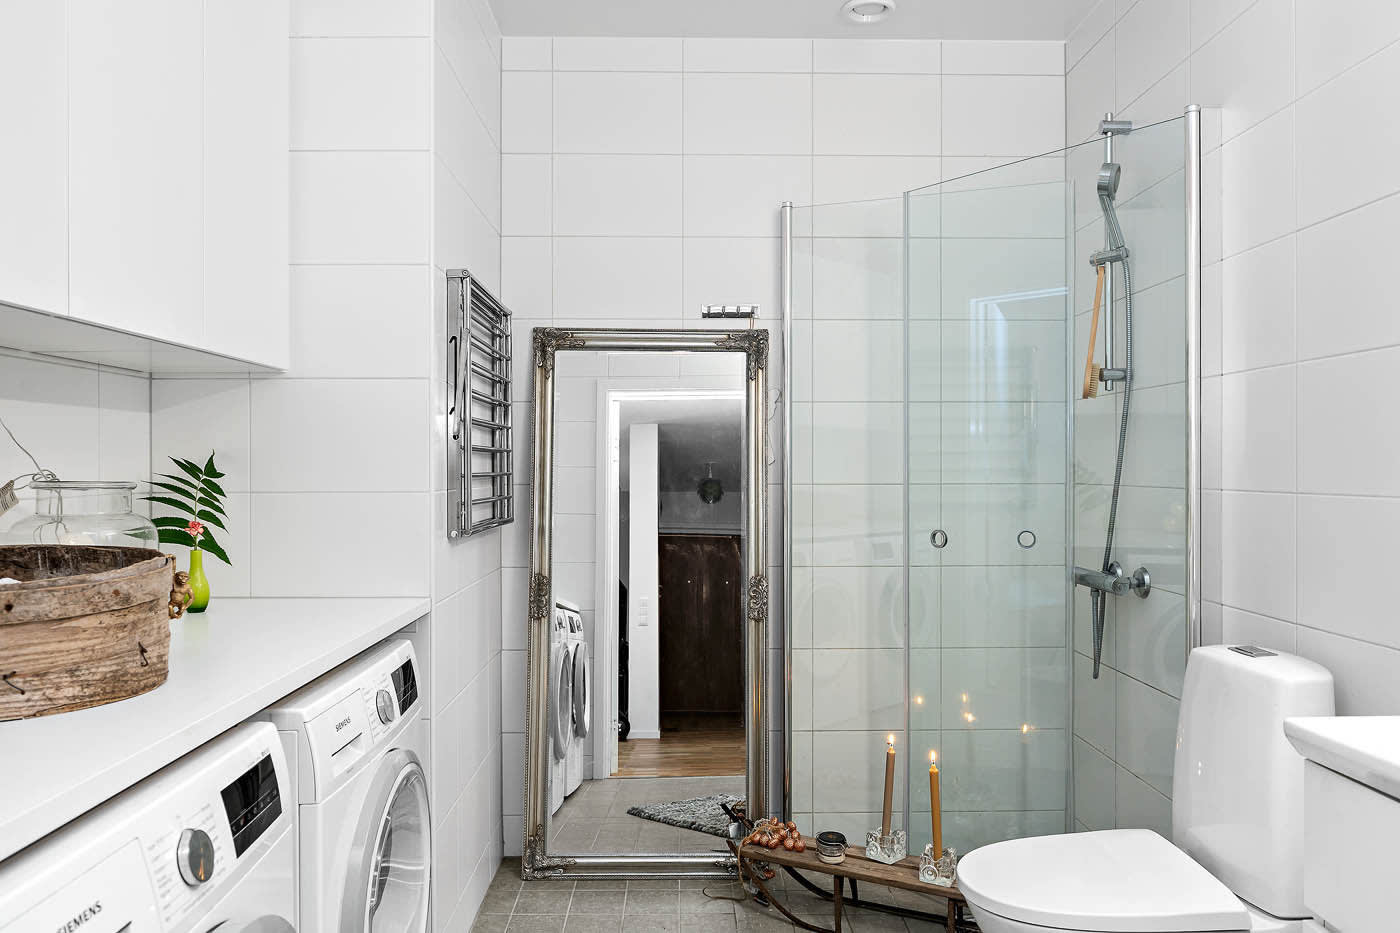 Helkaklat badrum med både tvättmaskin och torktumlare från Siemens